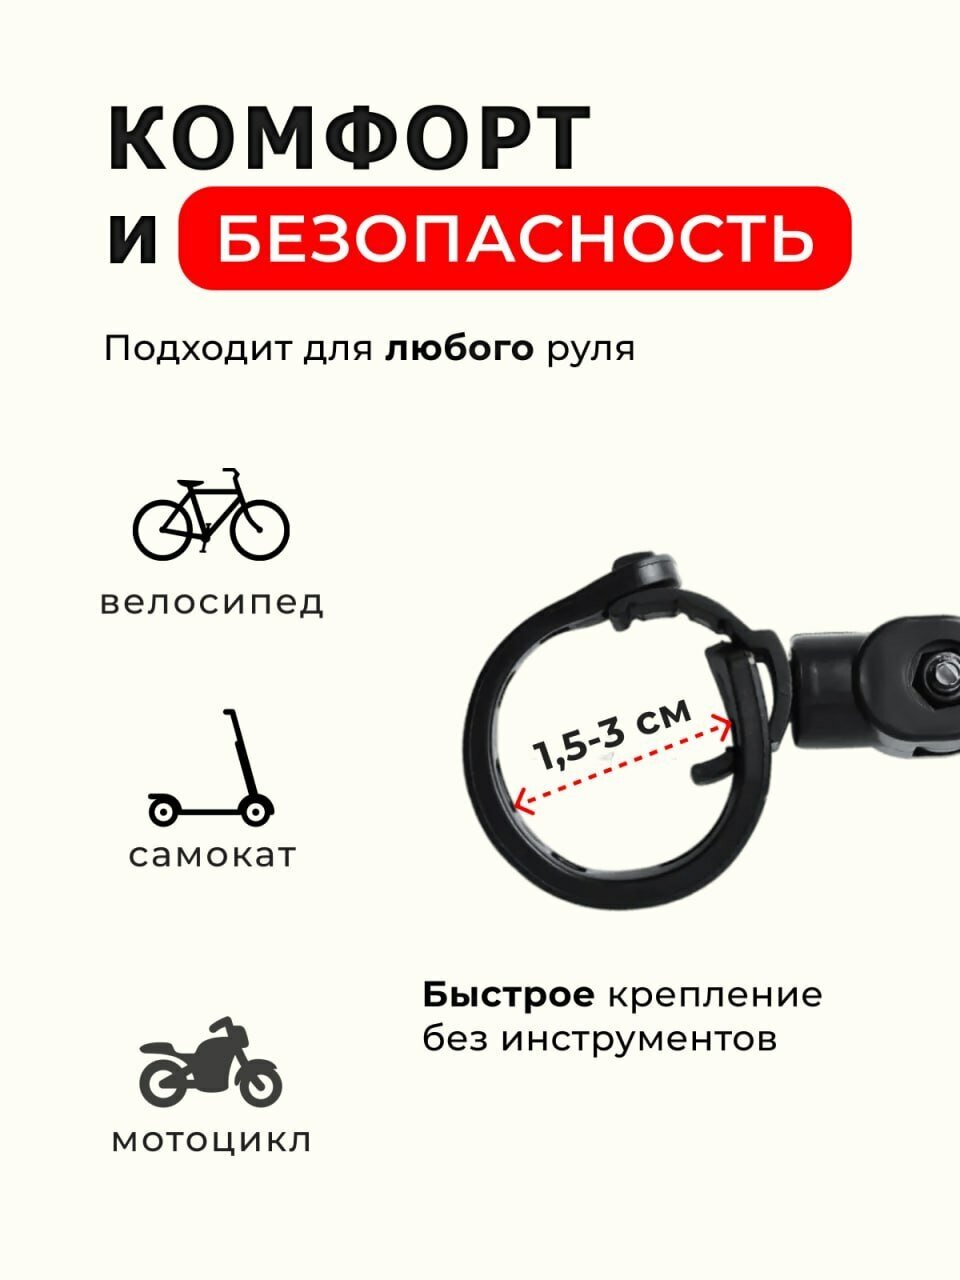 Зеркало для велосипеда 2шт